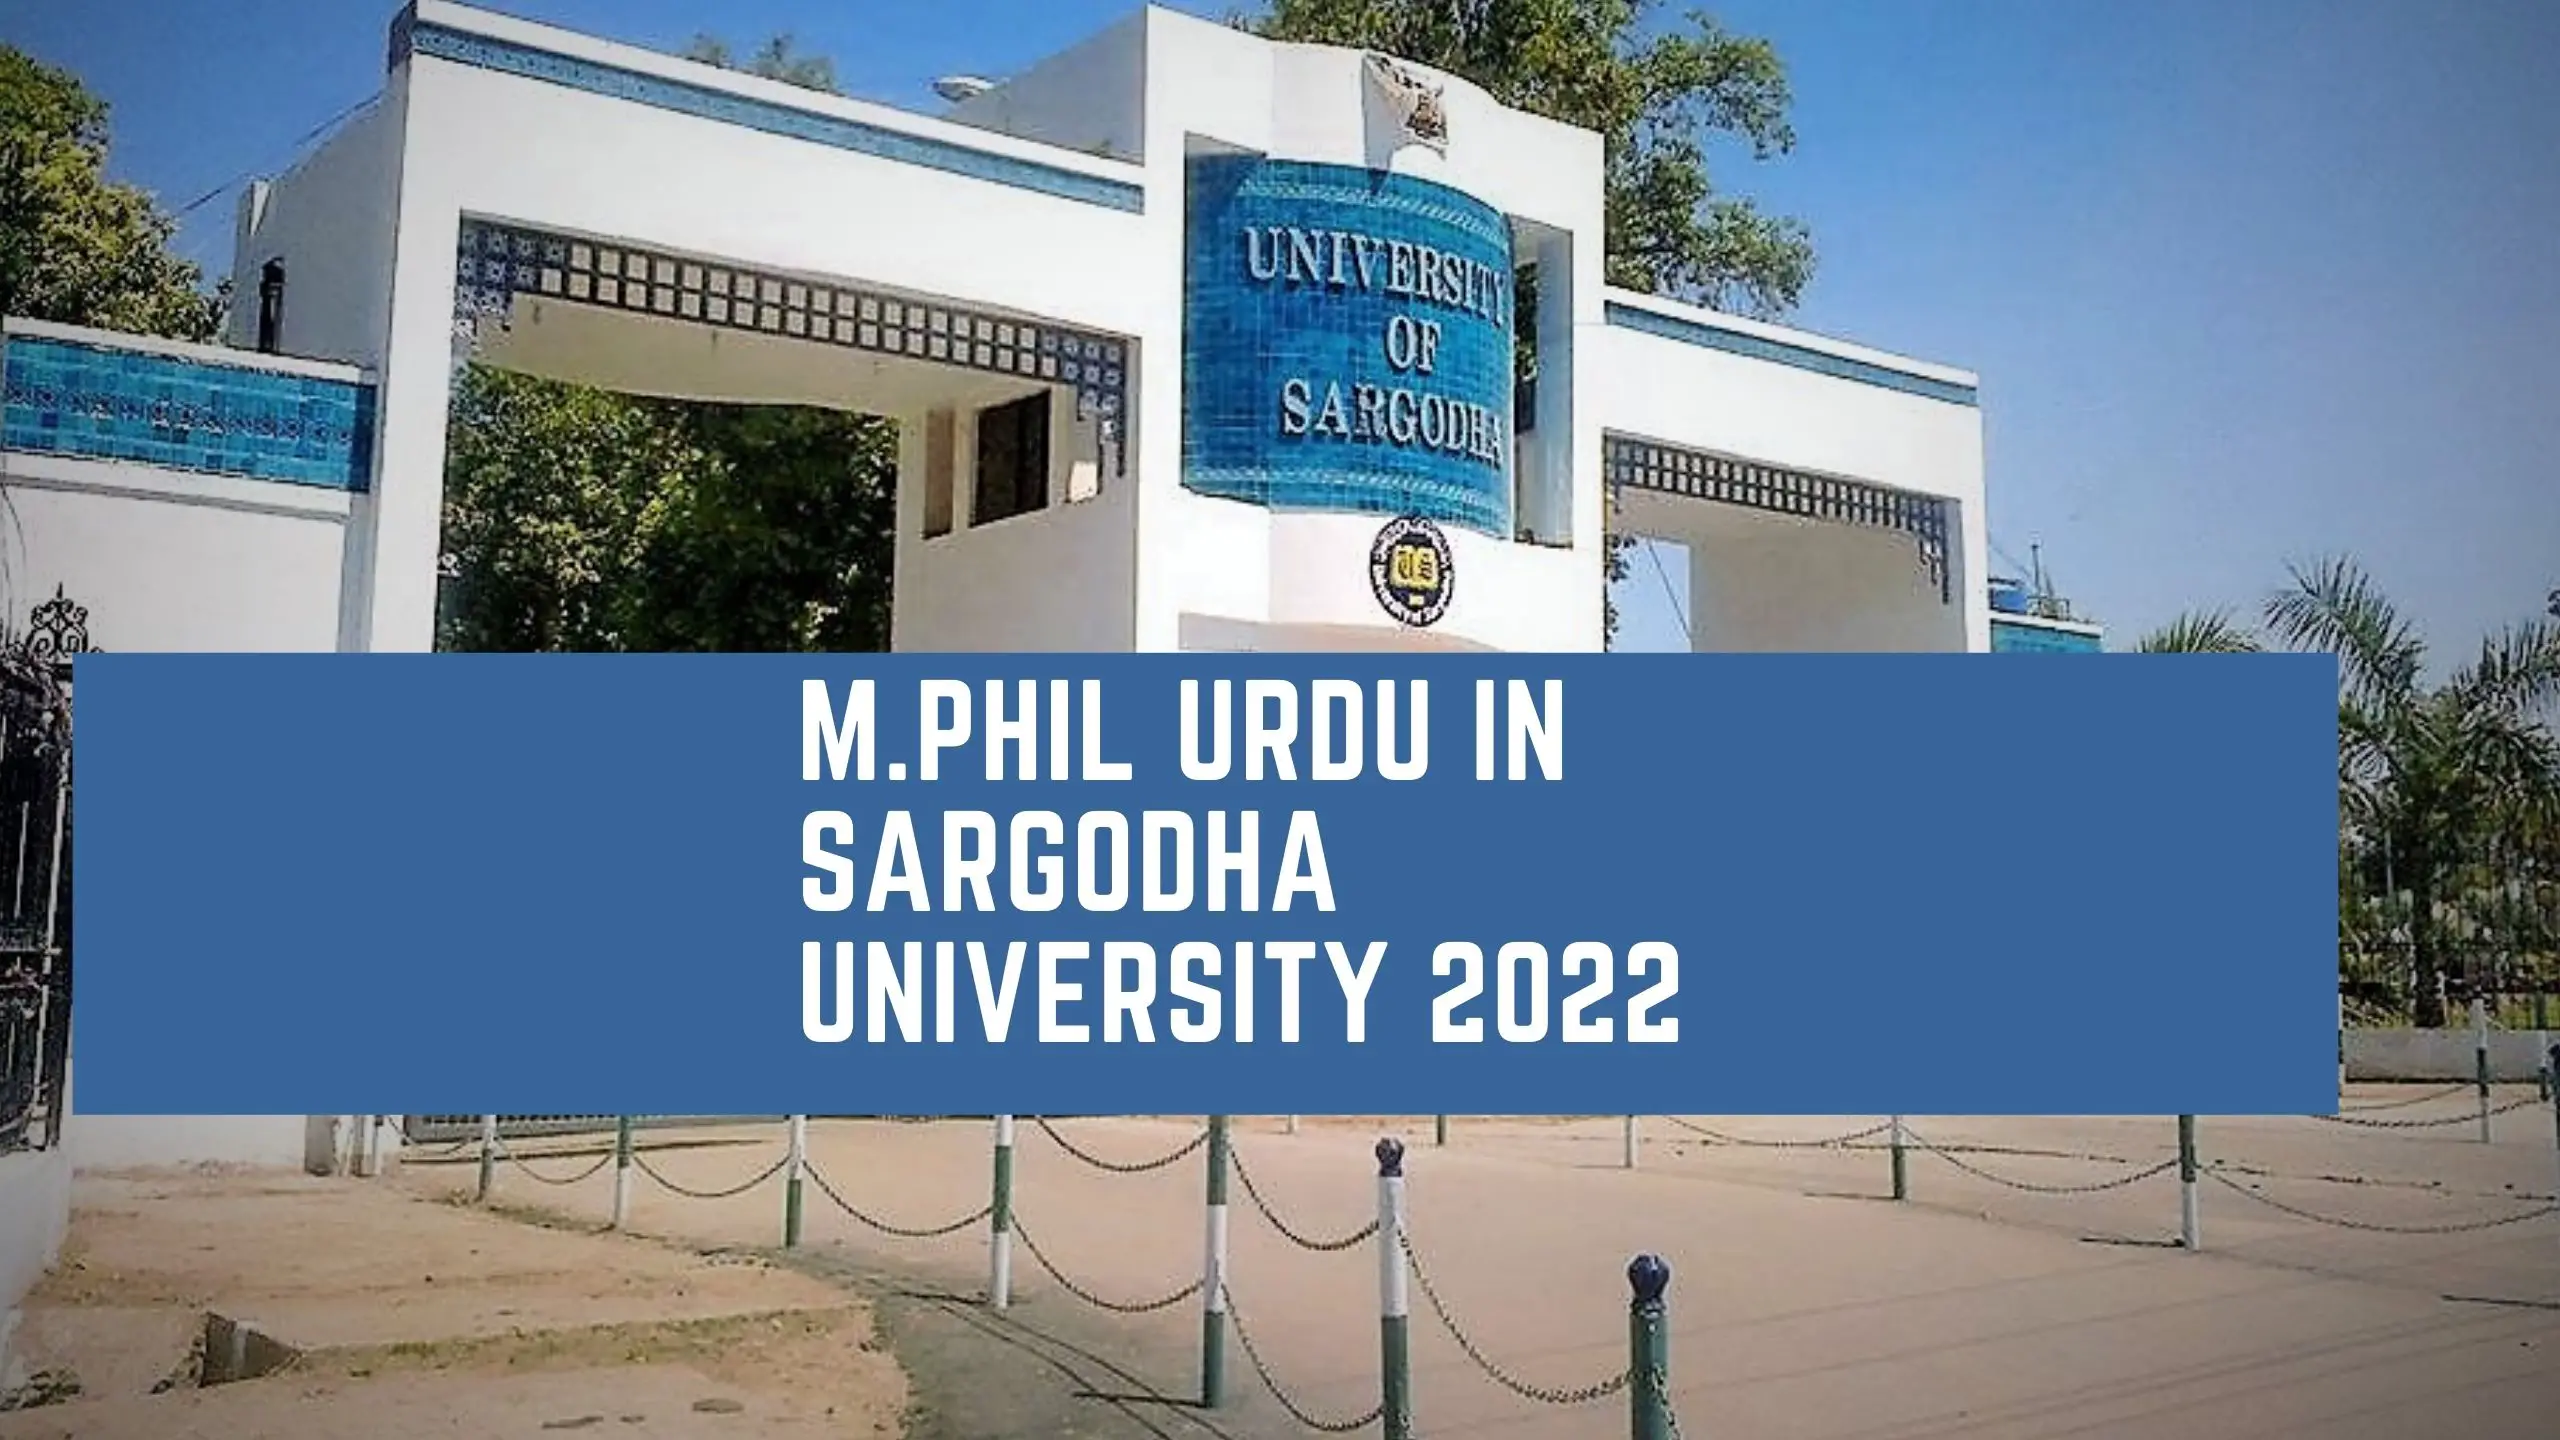 M.Phil Urdu in Sargodha University 2022